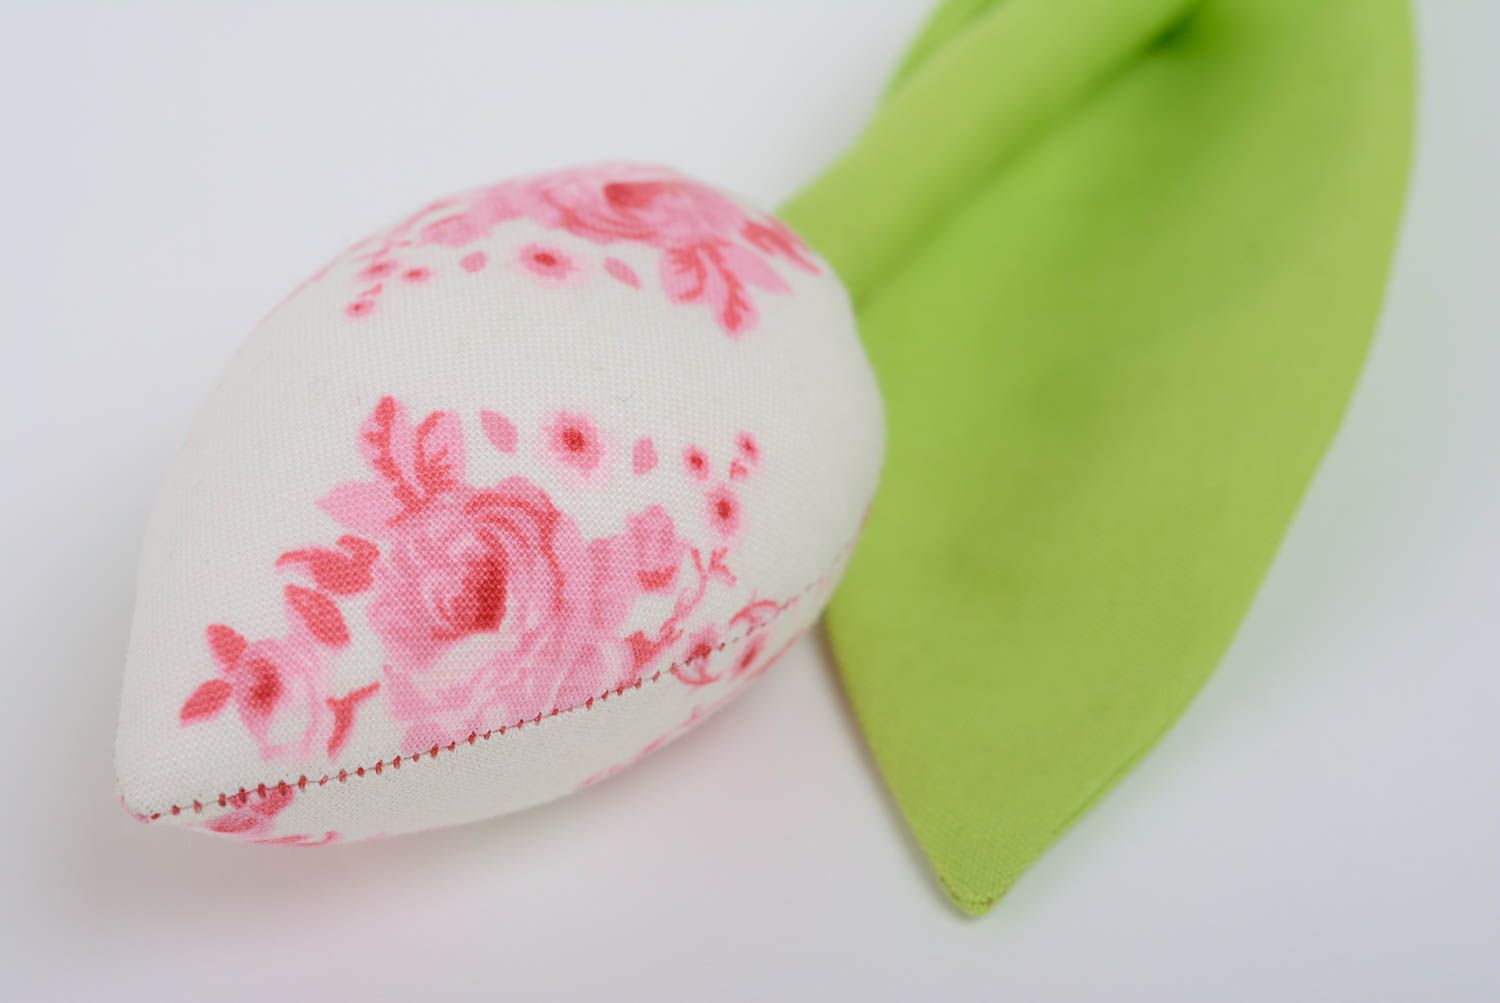 Текстильный тюльпан из хлопка на гибкой ножке для декора или фотосессии хенд мэйд фото 2